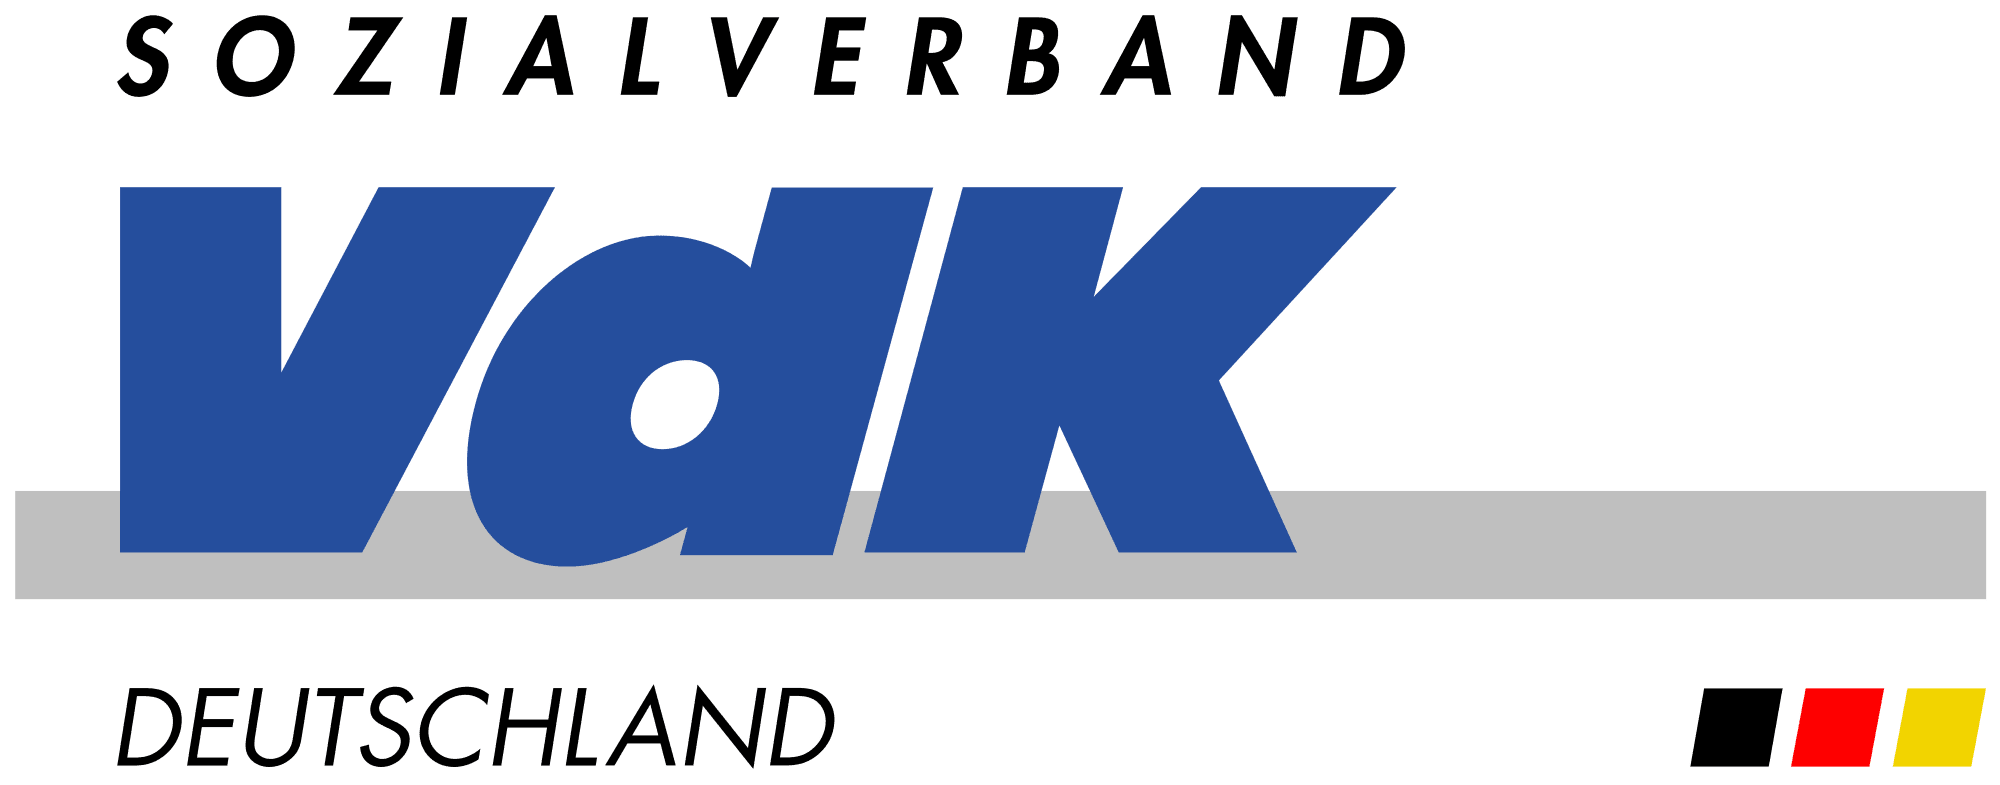 Sozialverband VdK Deutschland-logo